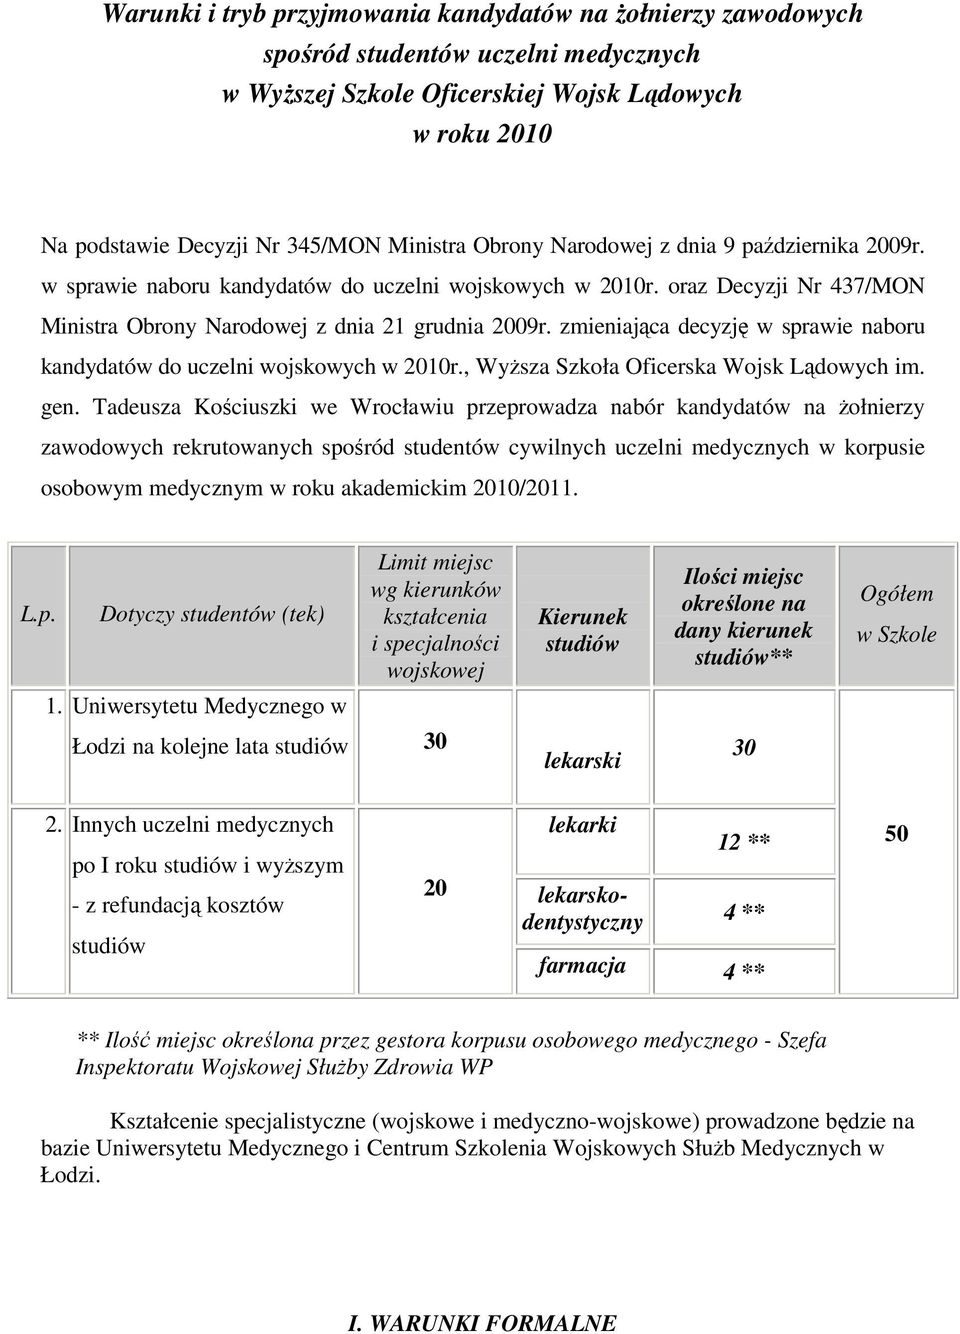 zmieniająca decyzję w sprawie naboru kandydatów do uczelni wojskowych w 2010r., WyŜsza Szkoła Oficerska Wojsk Lądowych im. gen.